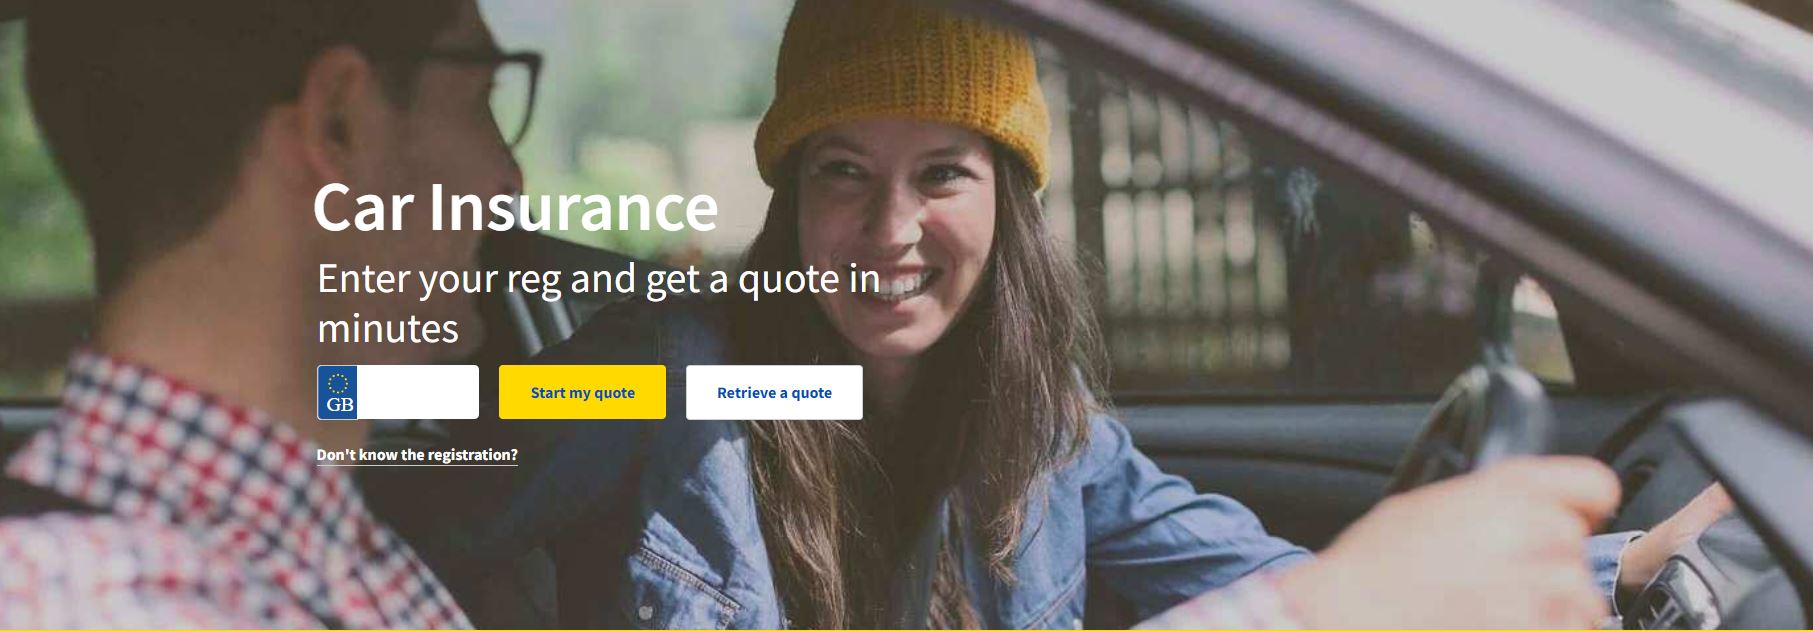 Aviva Car Insurance Homepage